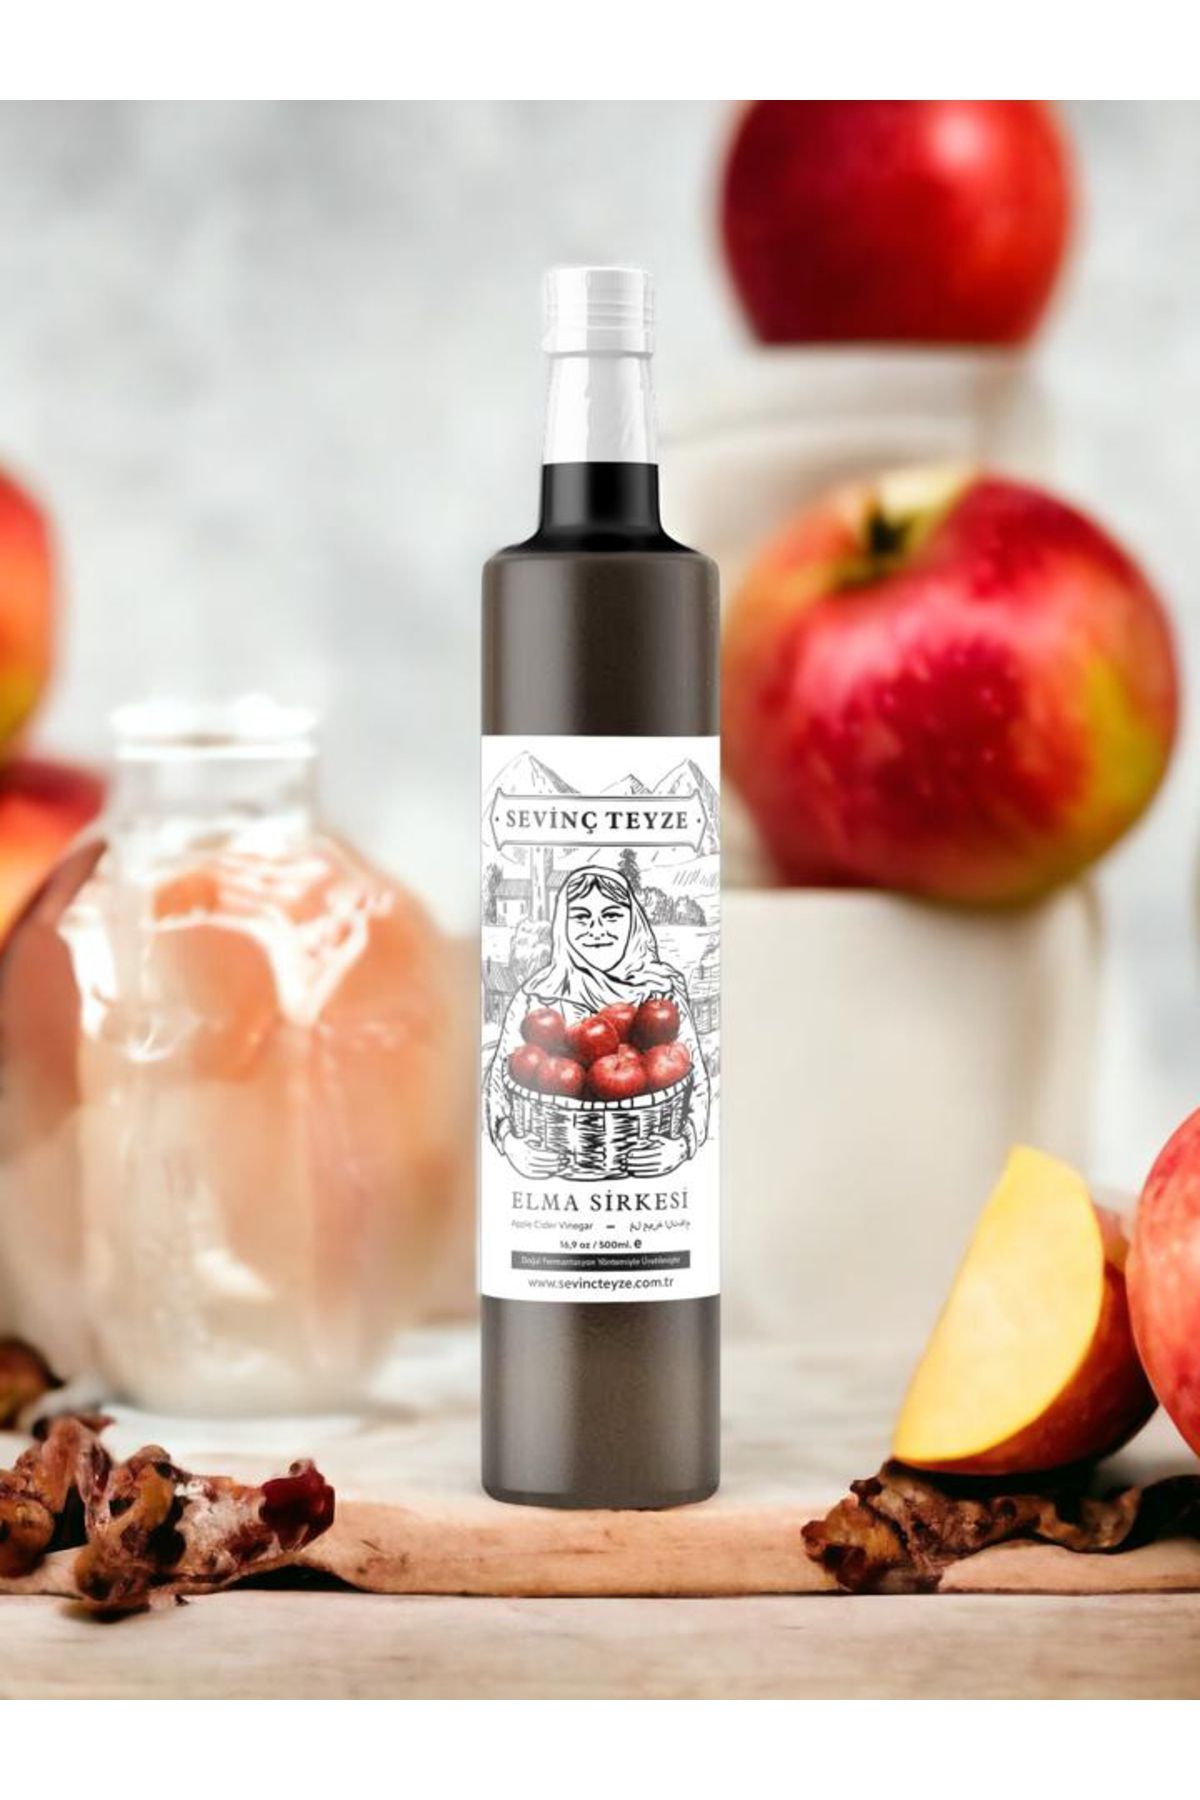 Sevinç Teyze Doğal Fermantasyon Elma Sirkesi, Apple Cider Vinegar 500ml. (ÇİĞ IÇİMLİK)